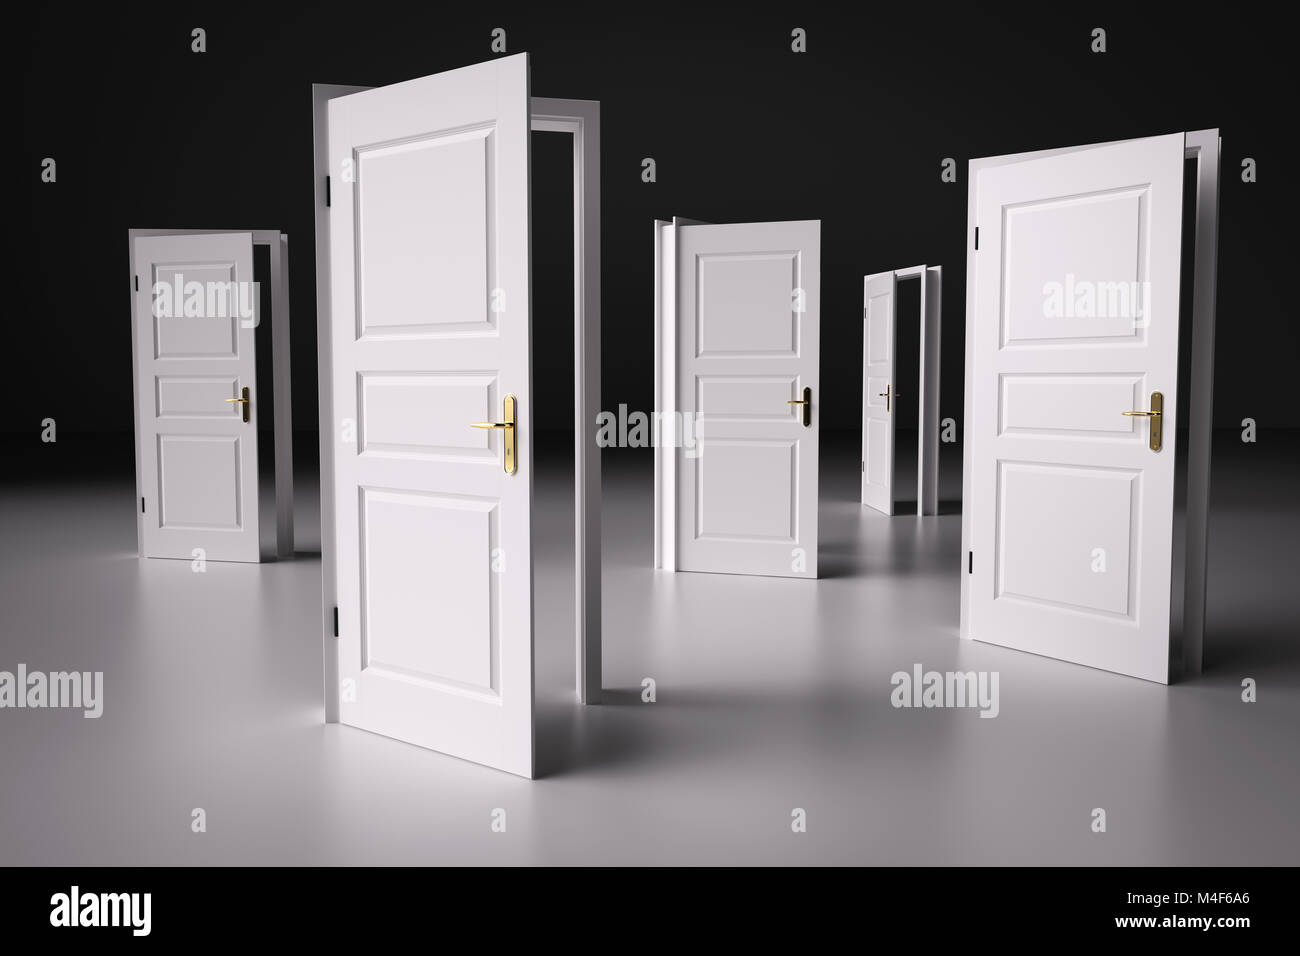 De nombreuses façons de choisir de, portes ouvertes. La prise de décisions Banque D'Images